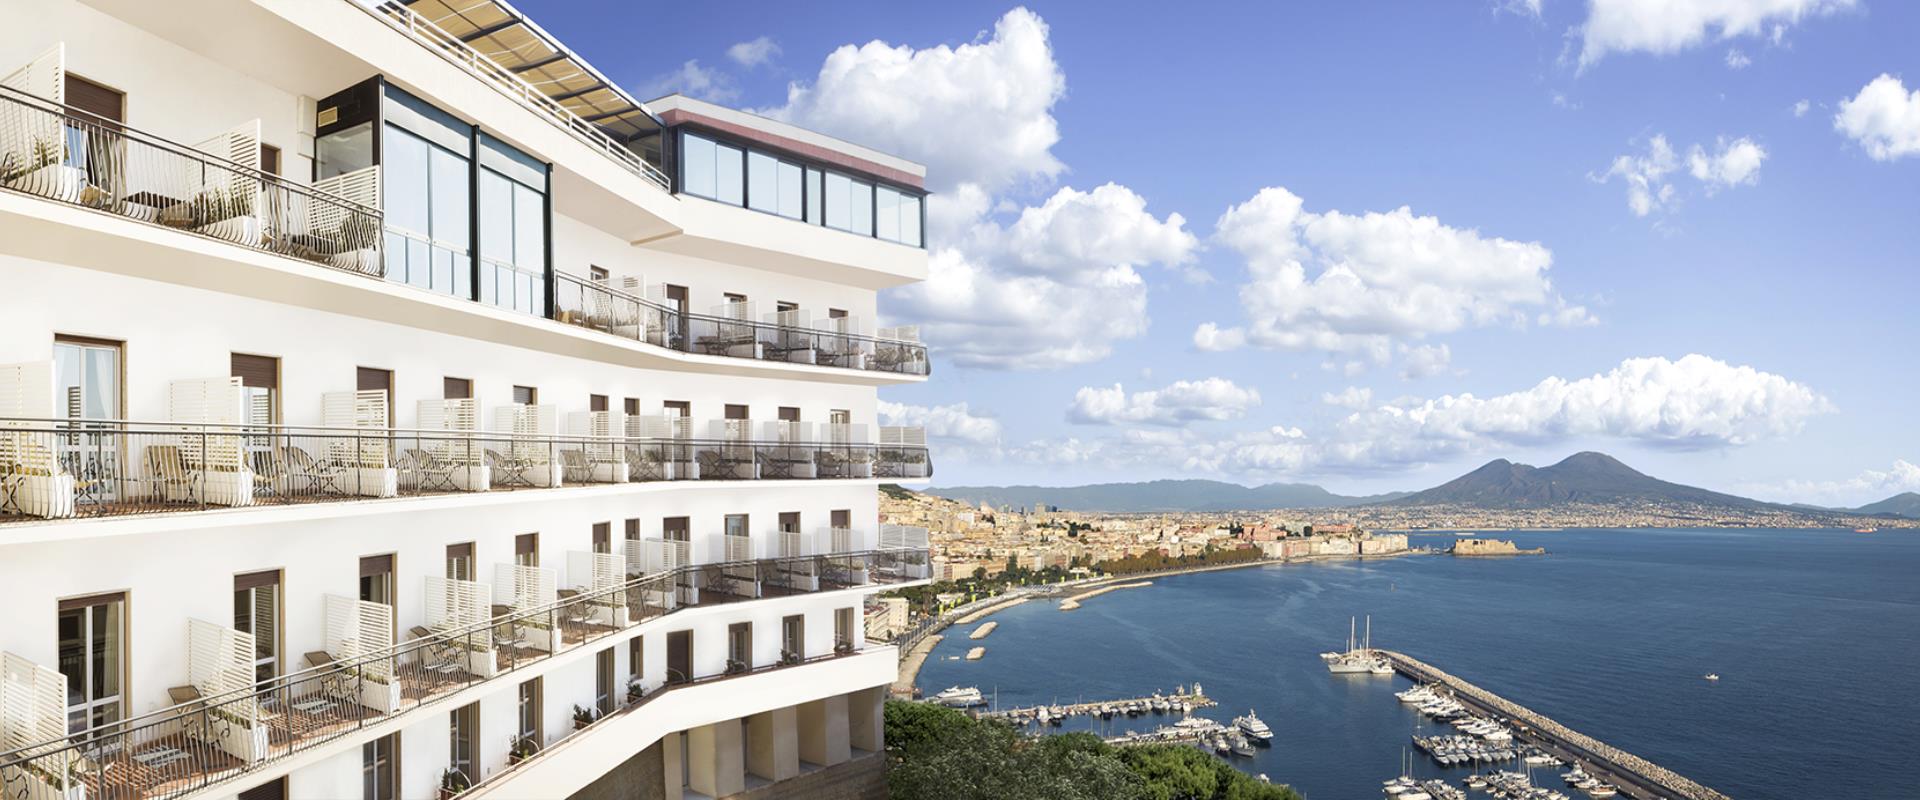 BW Signature Collection Hotel Paradiso Napels-hotel 4 sterren in Posillipo met ongelofelijk uitzicht op de baai van Napels